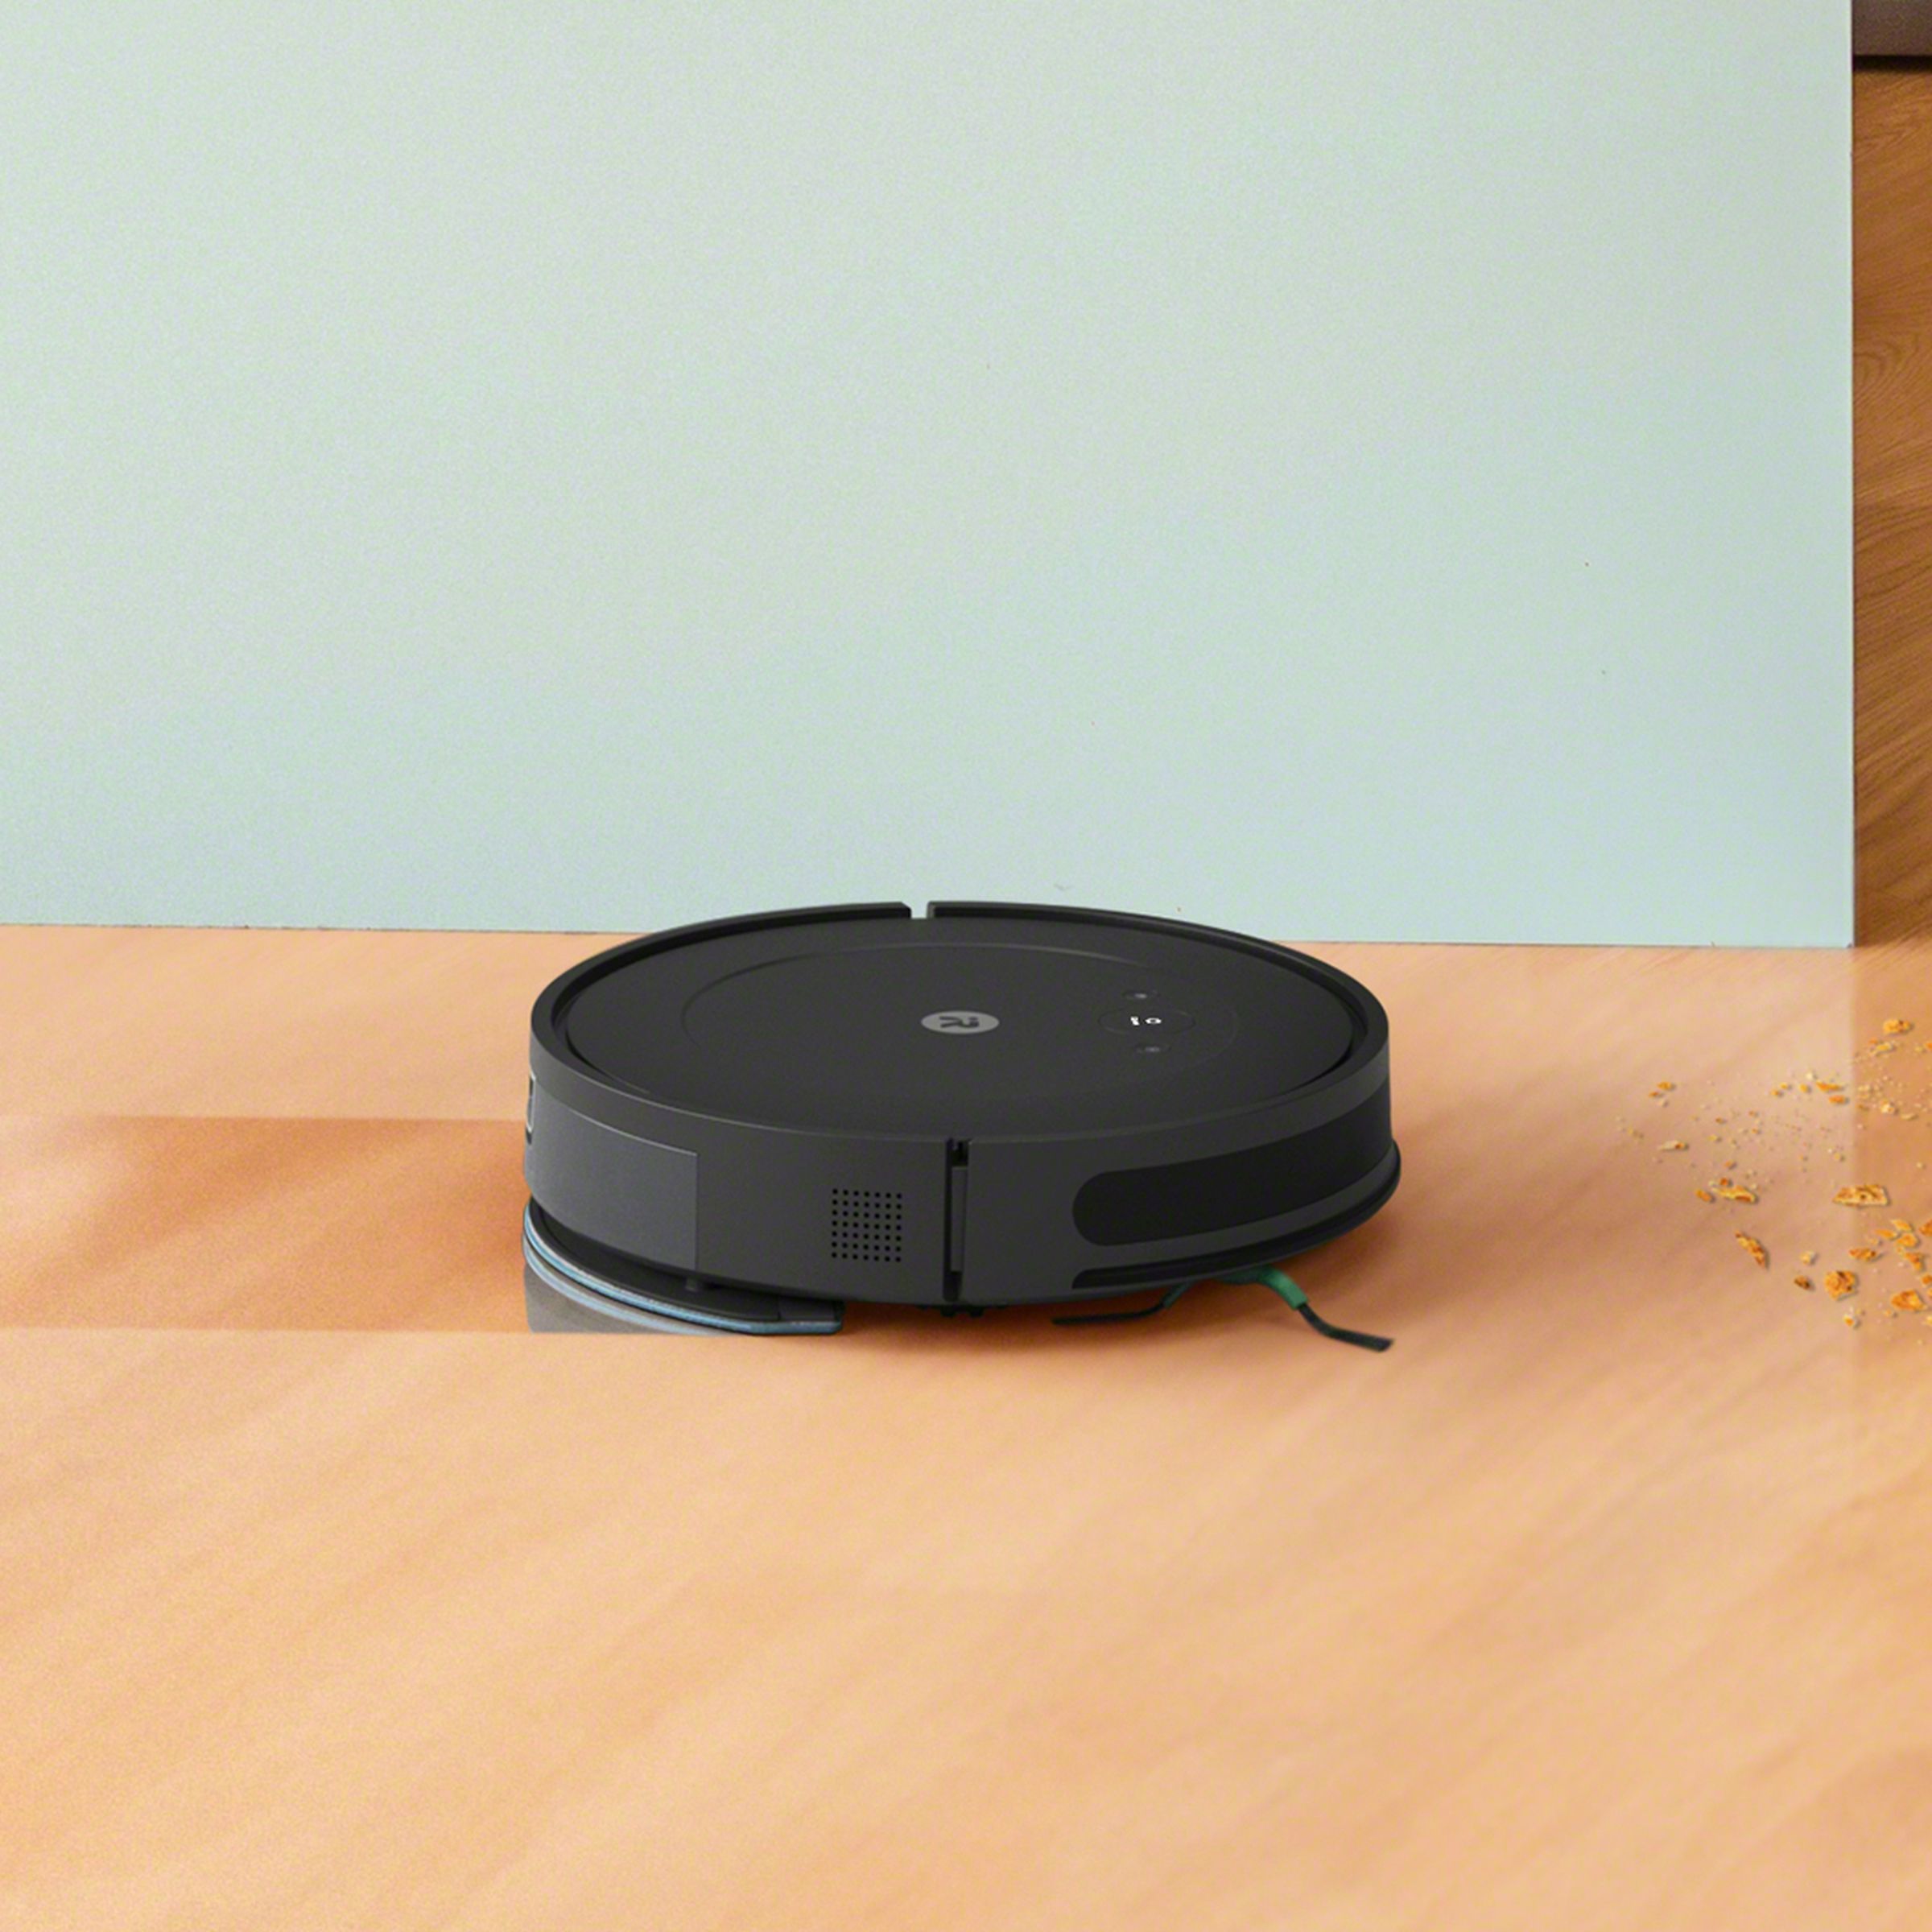 iRobot’s Roomba Combo Essential robot vacuum cleaner on a wooden floor.